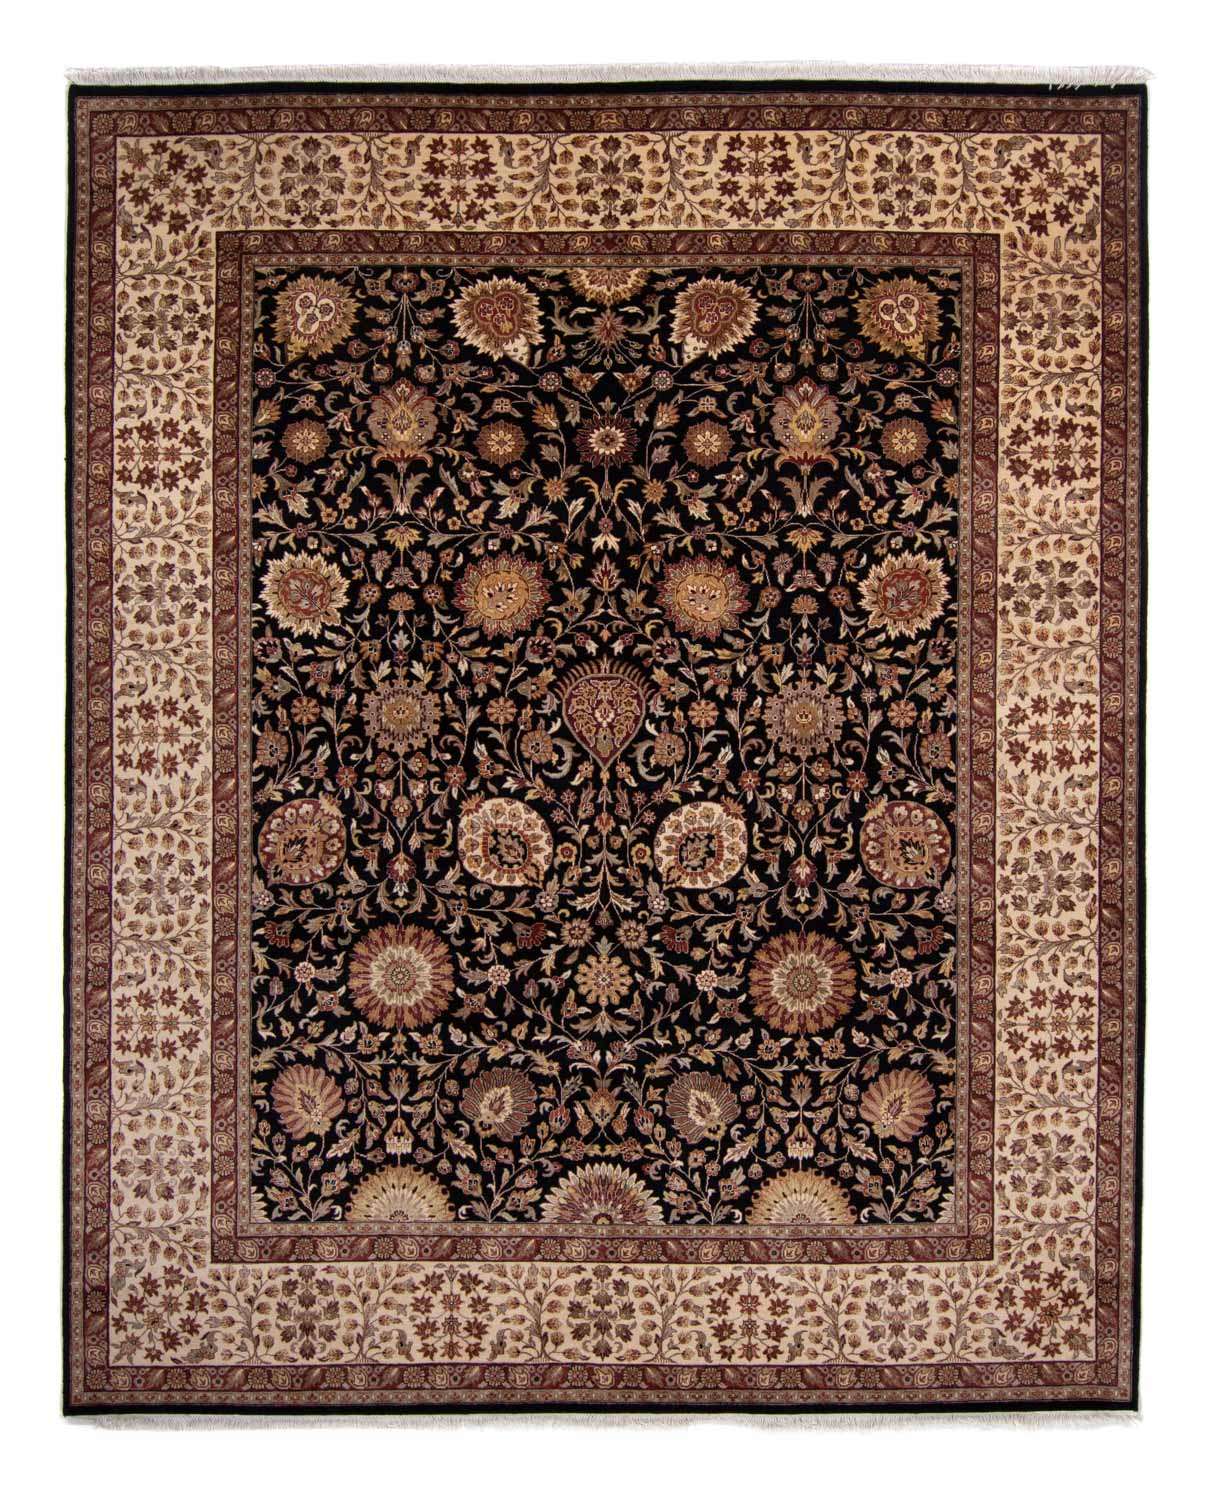 Perzisch tapijt - Tabriz - 312 x 244 cm - donkerblauw